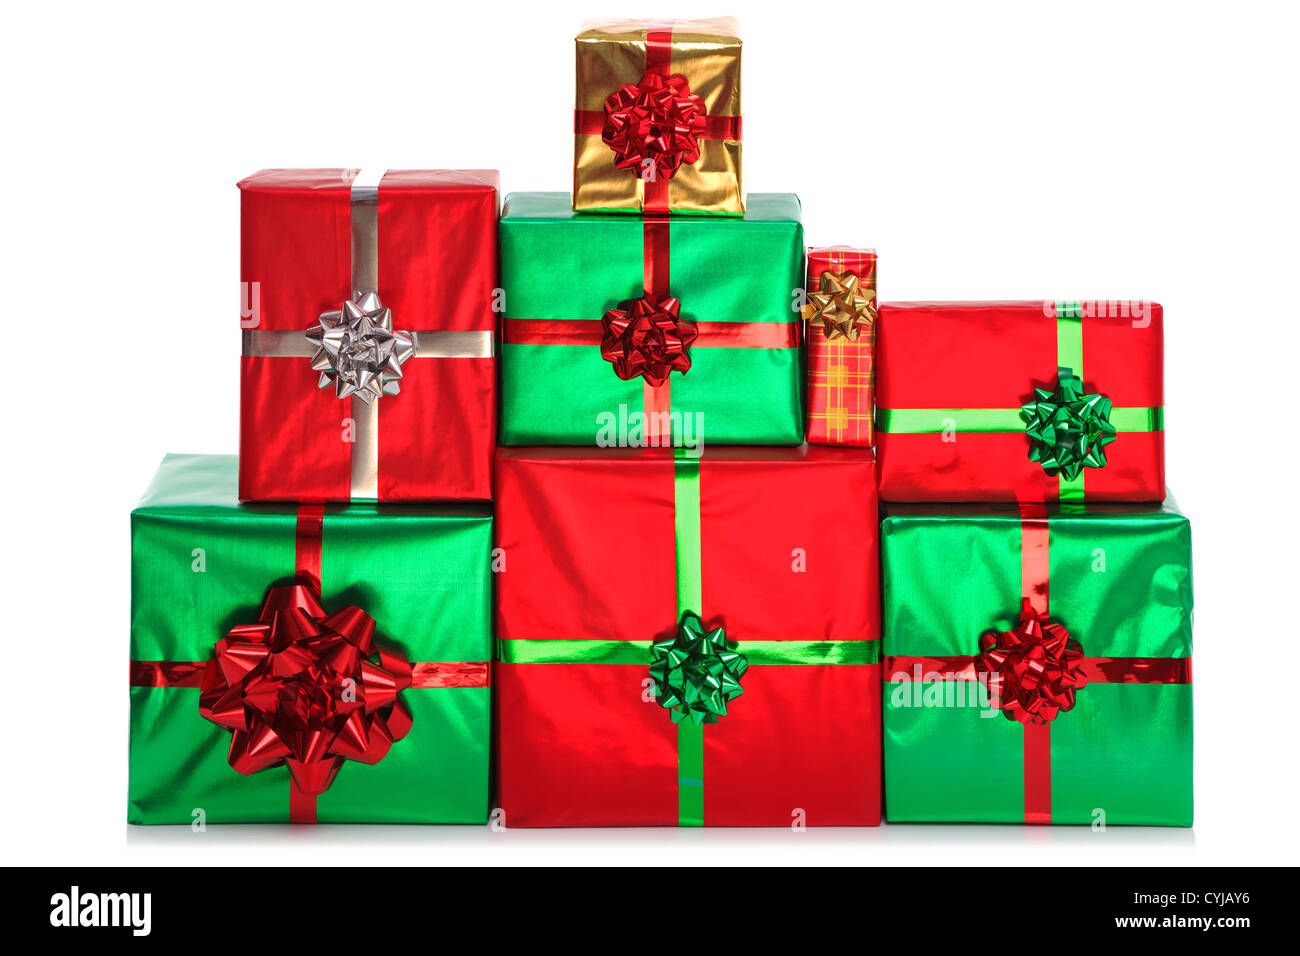 Eine Gruppe von Geschenk verpackt Geschenke in helles glänzendes Geschenkpapier mit Schleifen und Bändern, isoliert auf einem weißen Hintergrund. Stockfoto